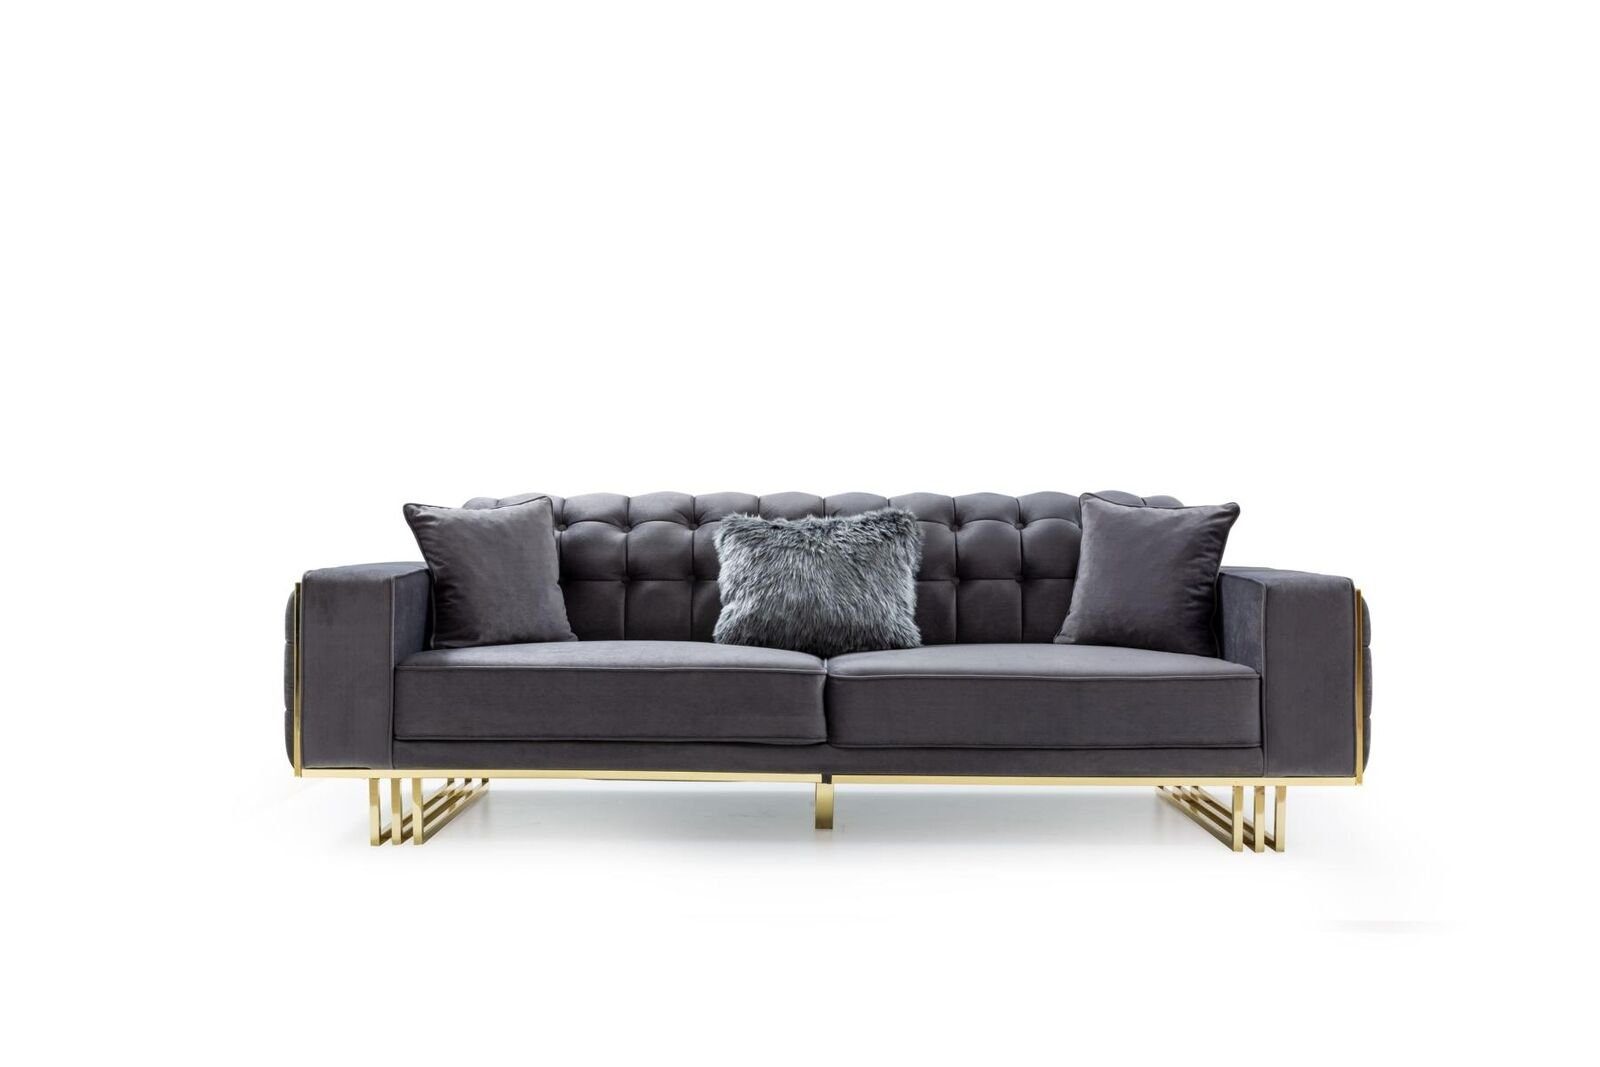 JVmoebel 3-Sitzer Luxus Möbel Wohnzimmer Füße 240cm Couch Sofas Couchen 3 Sitzer, 1 Teile, Made in Europa